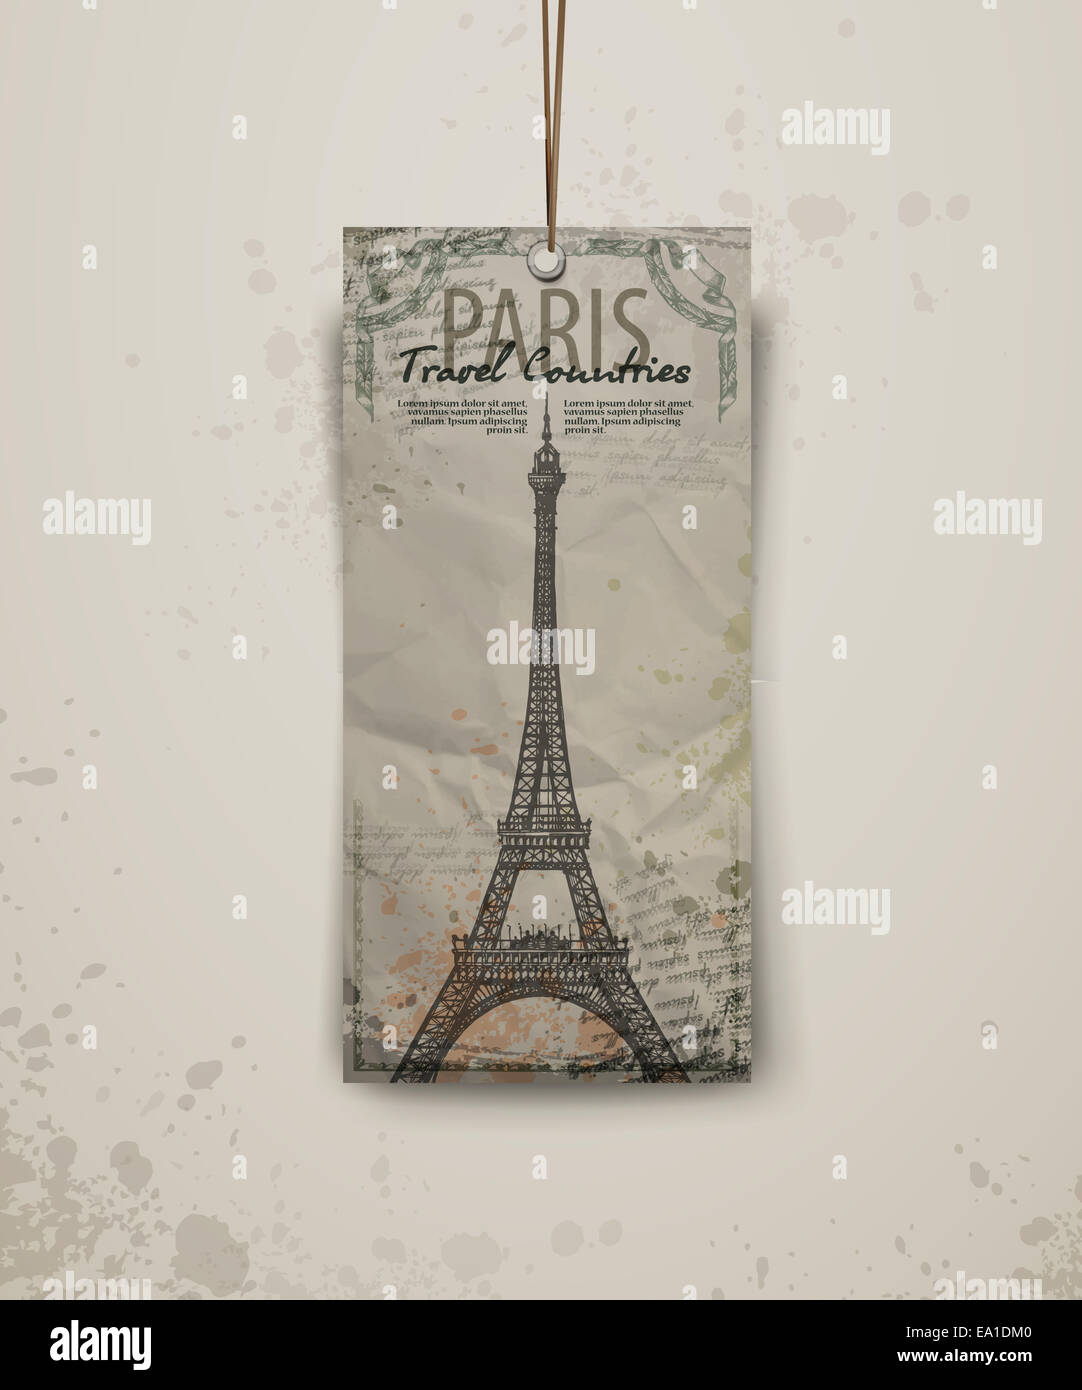 Eiffel tower vector illustration Stock Photo